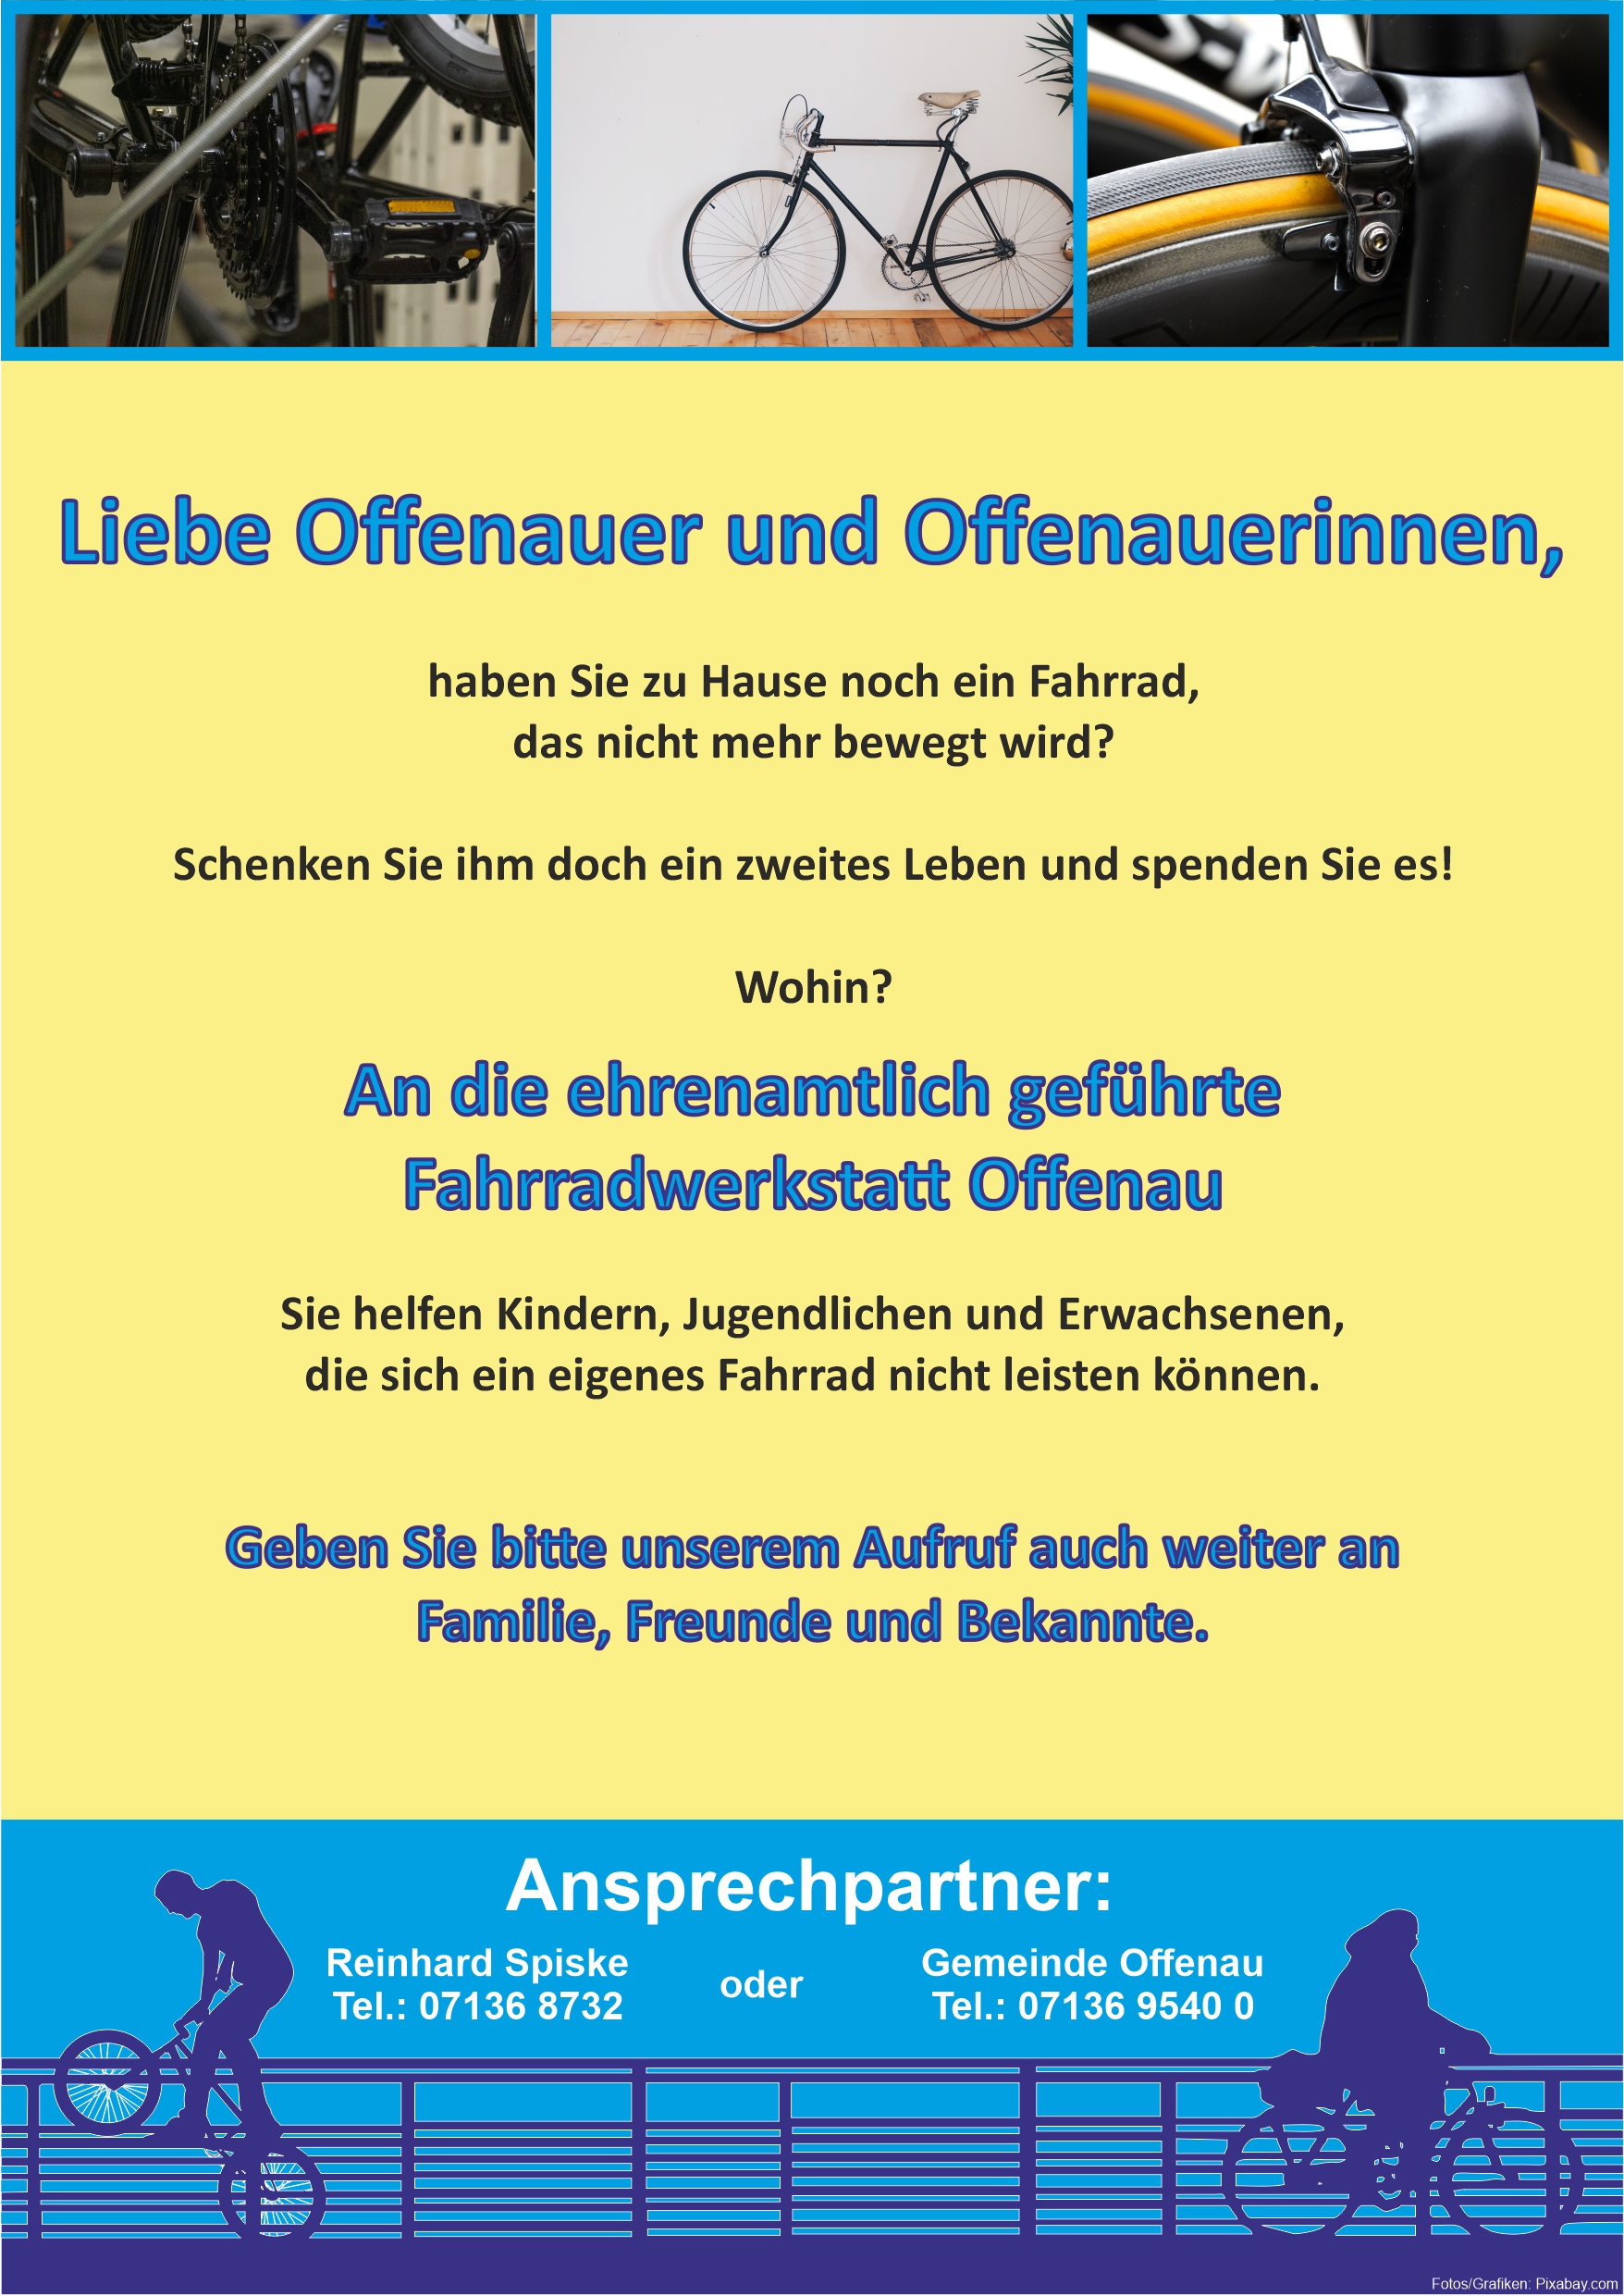 Plakat Spendenaufruf für die ehrenamtliche geführte Fahrradwerkstatt Offenau (Grafik: P.Gärtner/Gemeinde Offenau)